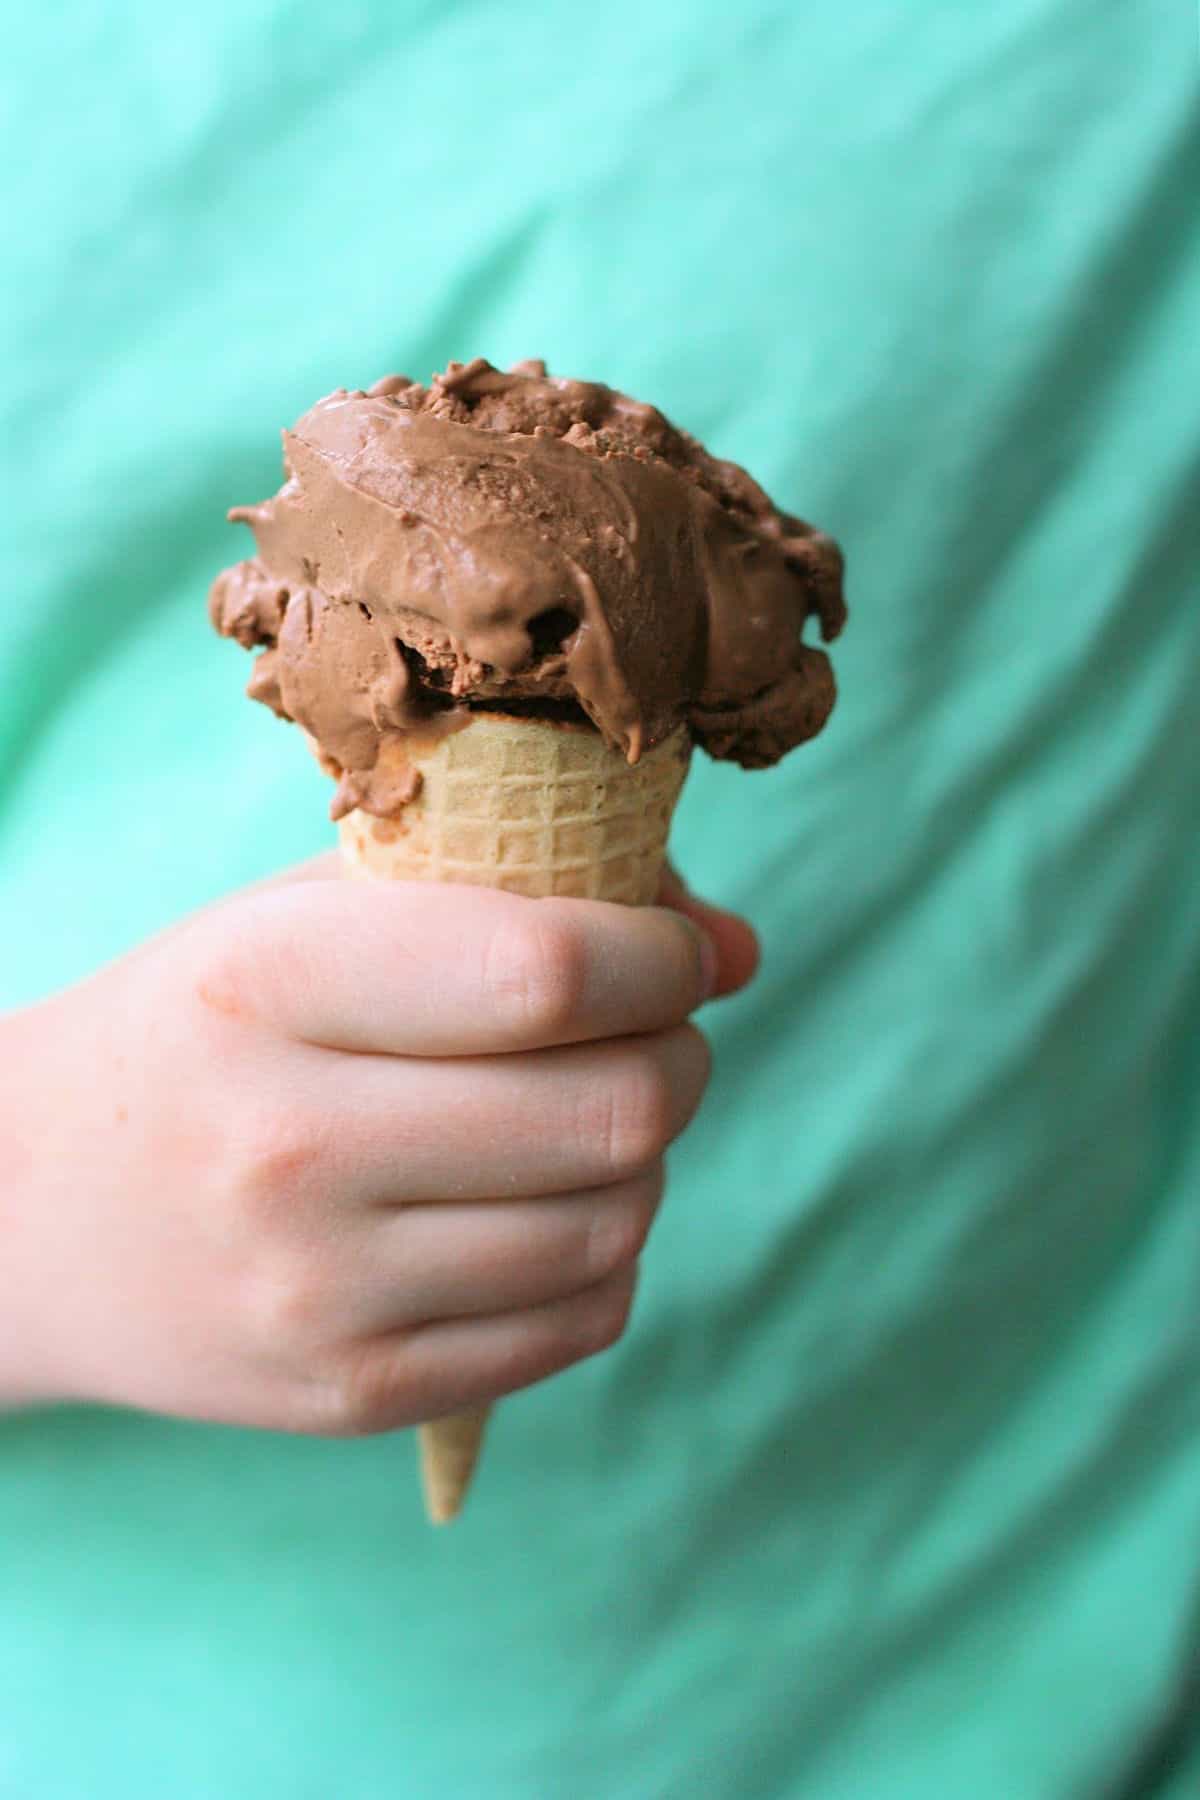 coconut milk chocolate ice cream in a cone